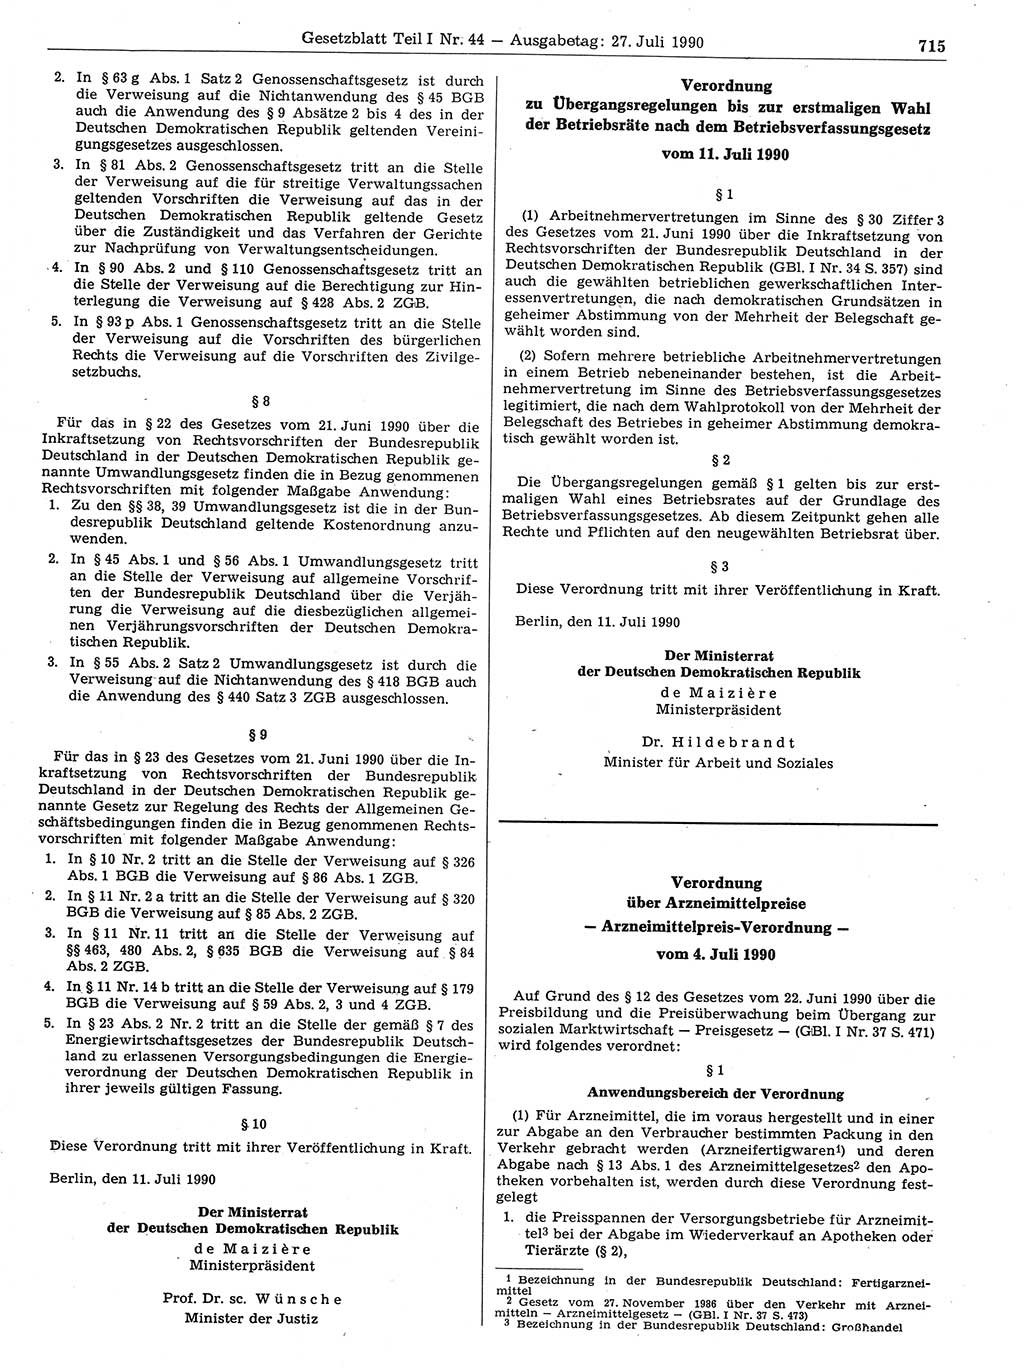 Gesetzblatt (GBl.) der Deutschen Demokratischen Republik (DDR) Teil Ⅰ 1990, Seite 715 (GBl. DDR Ⅰ 1990, S. 715)